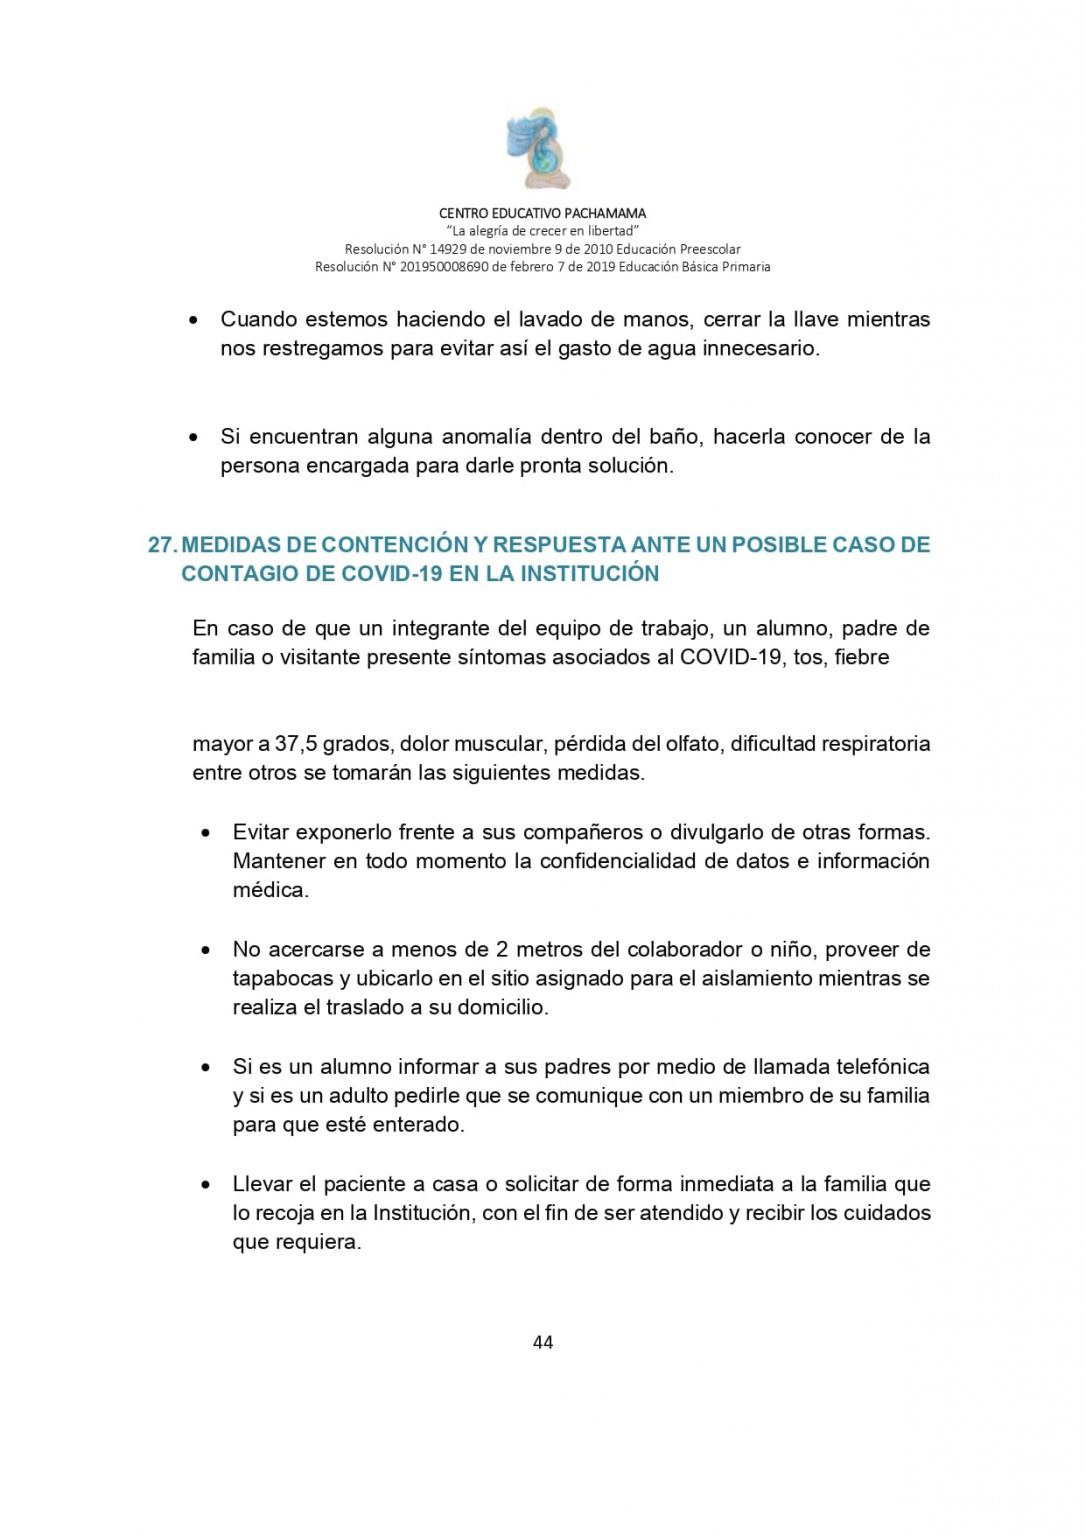 PROTOCOLO DE BIOSEGURIDAD PACHAMAMA Última Versión (3)-convertido_page-0044